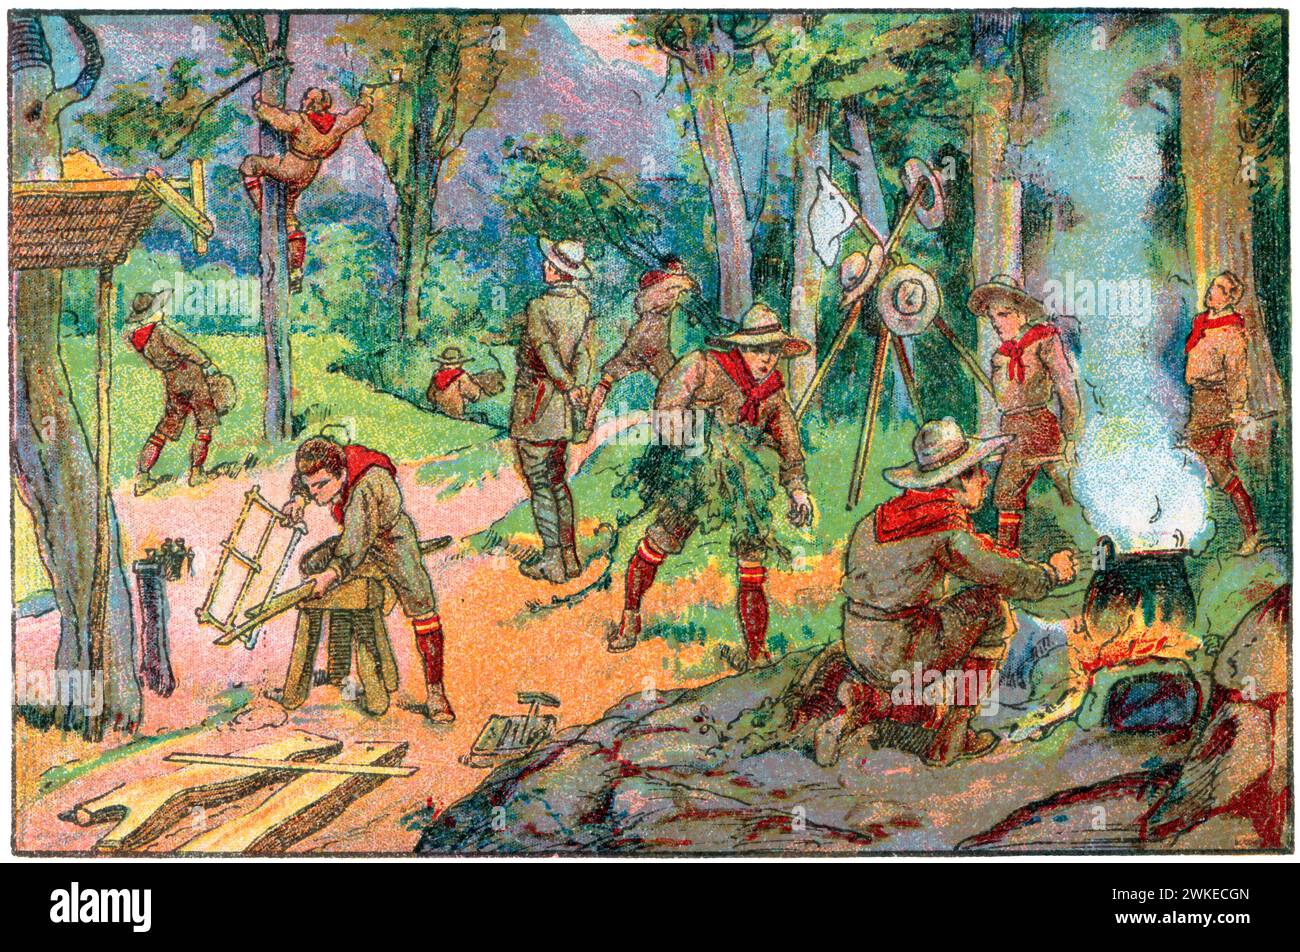 Colección de cromos de los Exploradores españoles (boy scouts). Jóvenes exploradores realizando tareas económicas con tenacidad y perseverancia. Años 1930. Stock Photo